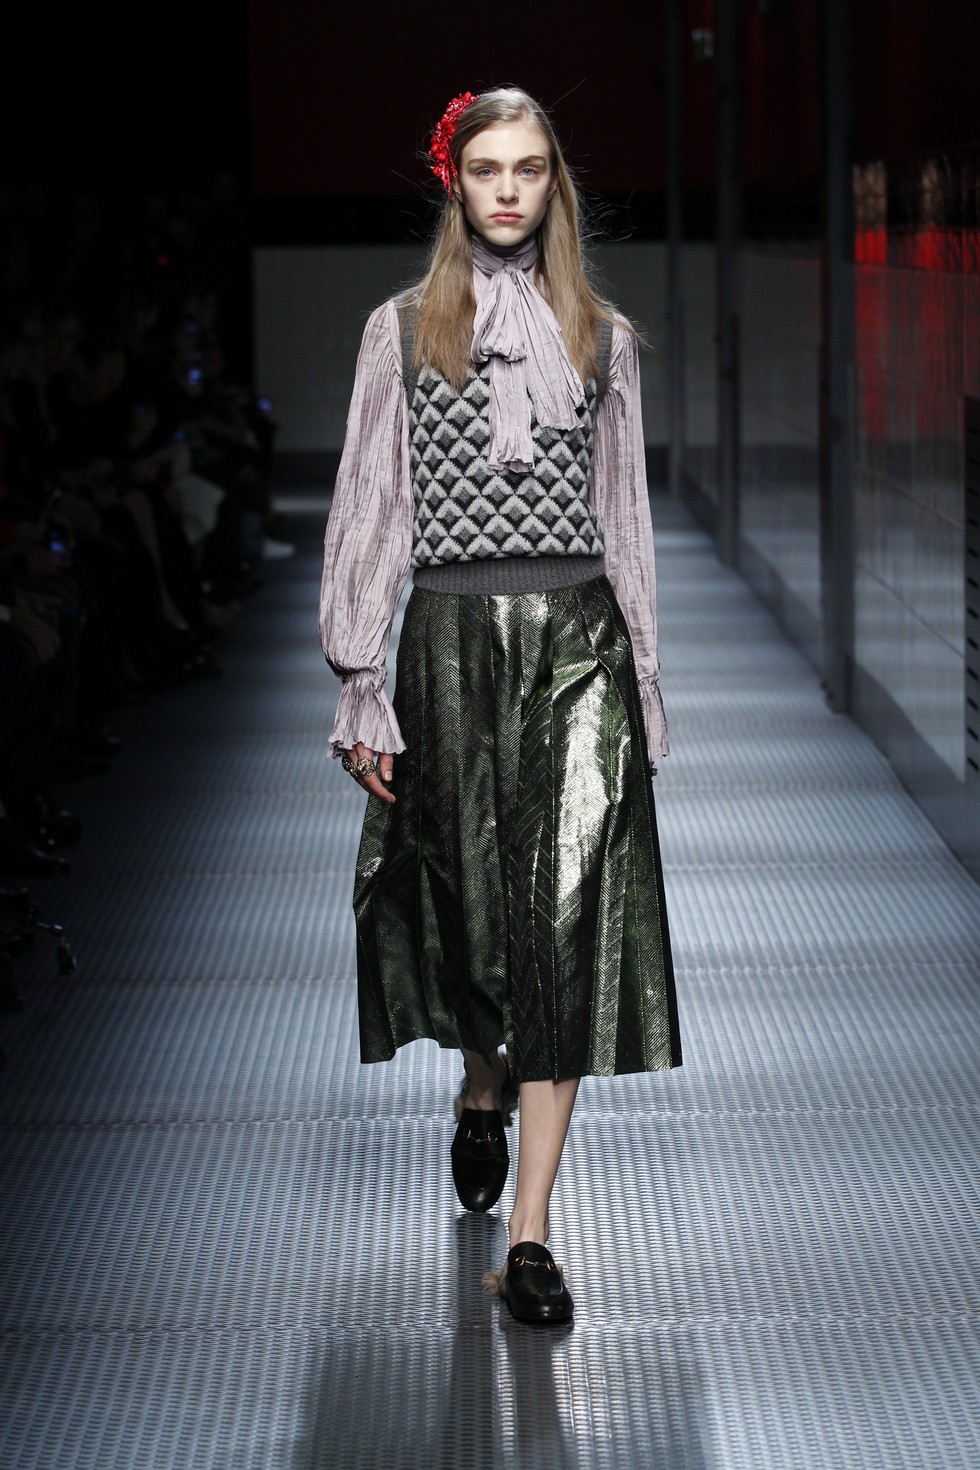 Italian Fashion Designers Gucci's Alessandro Michele awarded at BFA (2)